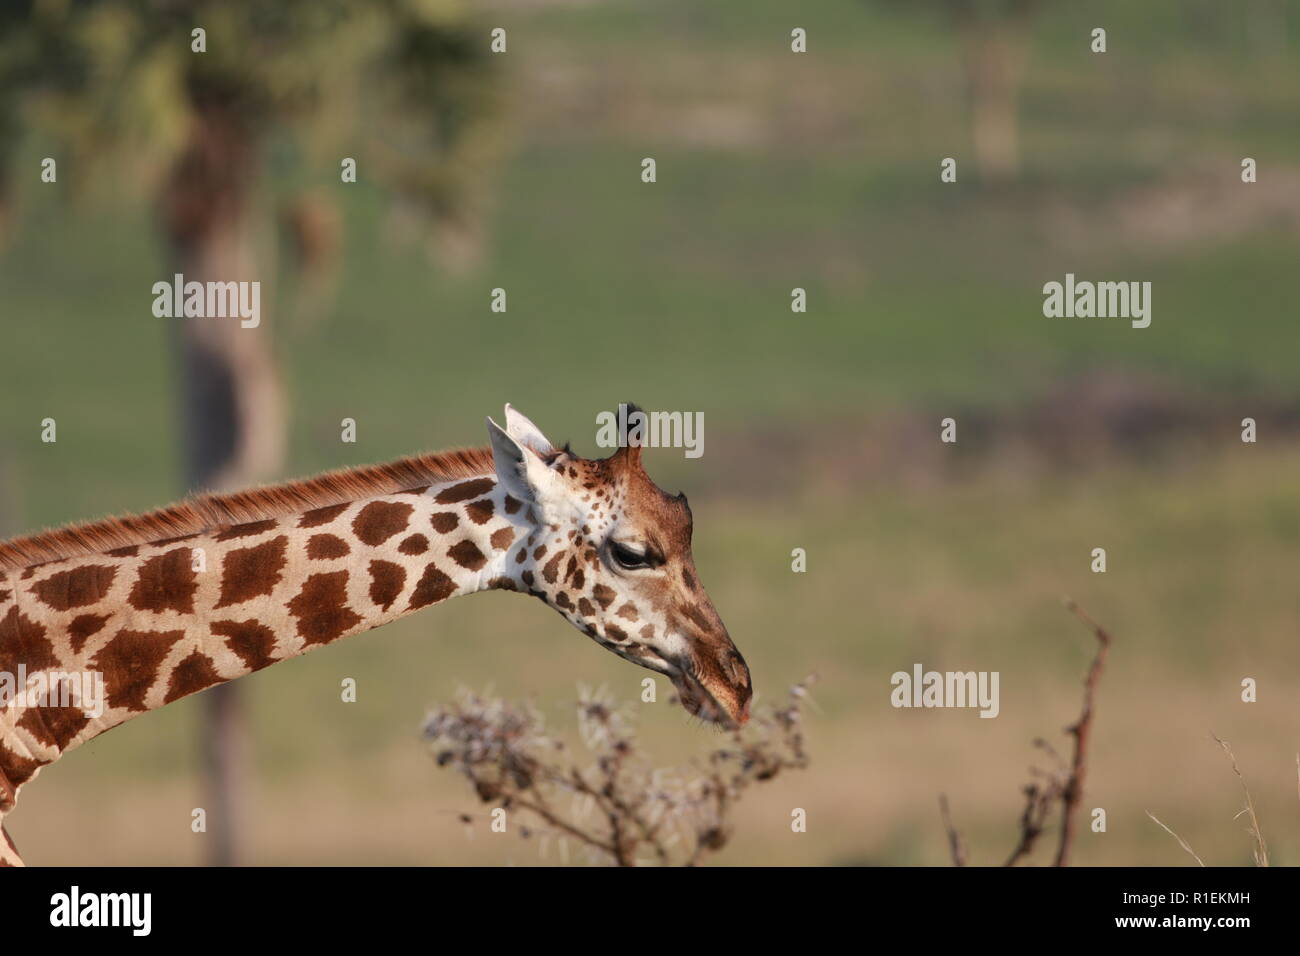 Le profil de Rothchild girafe cou tête manger Parc National Murchison Falls l'Ouganda Banque D'Images